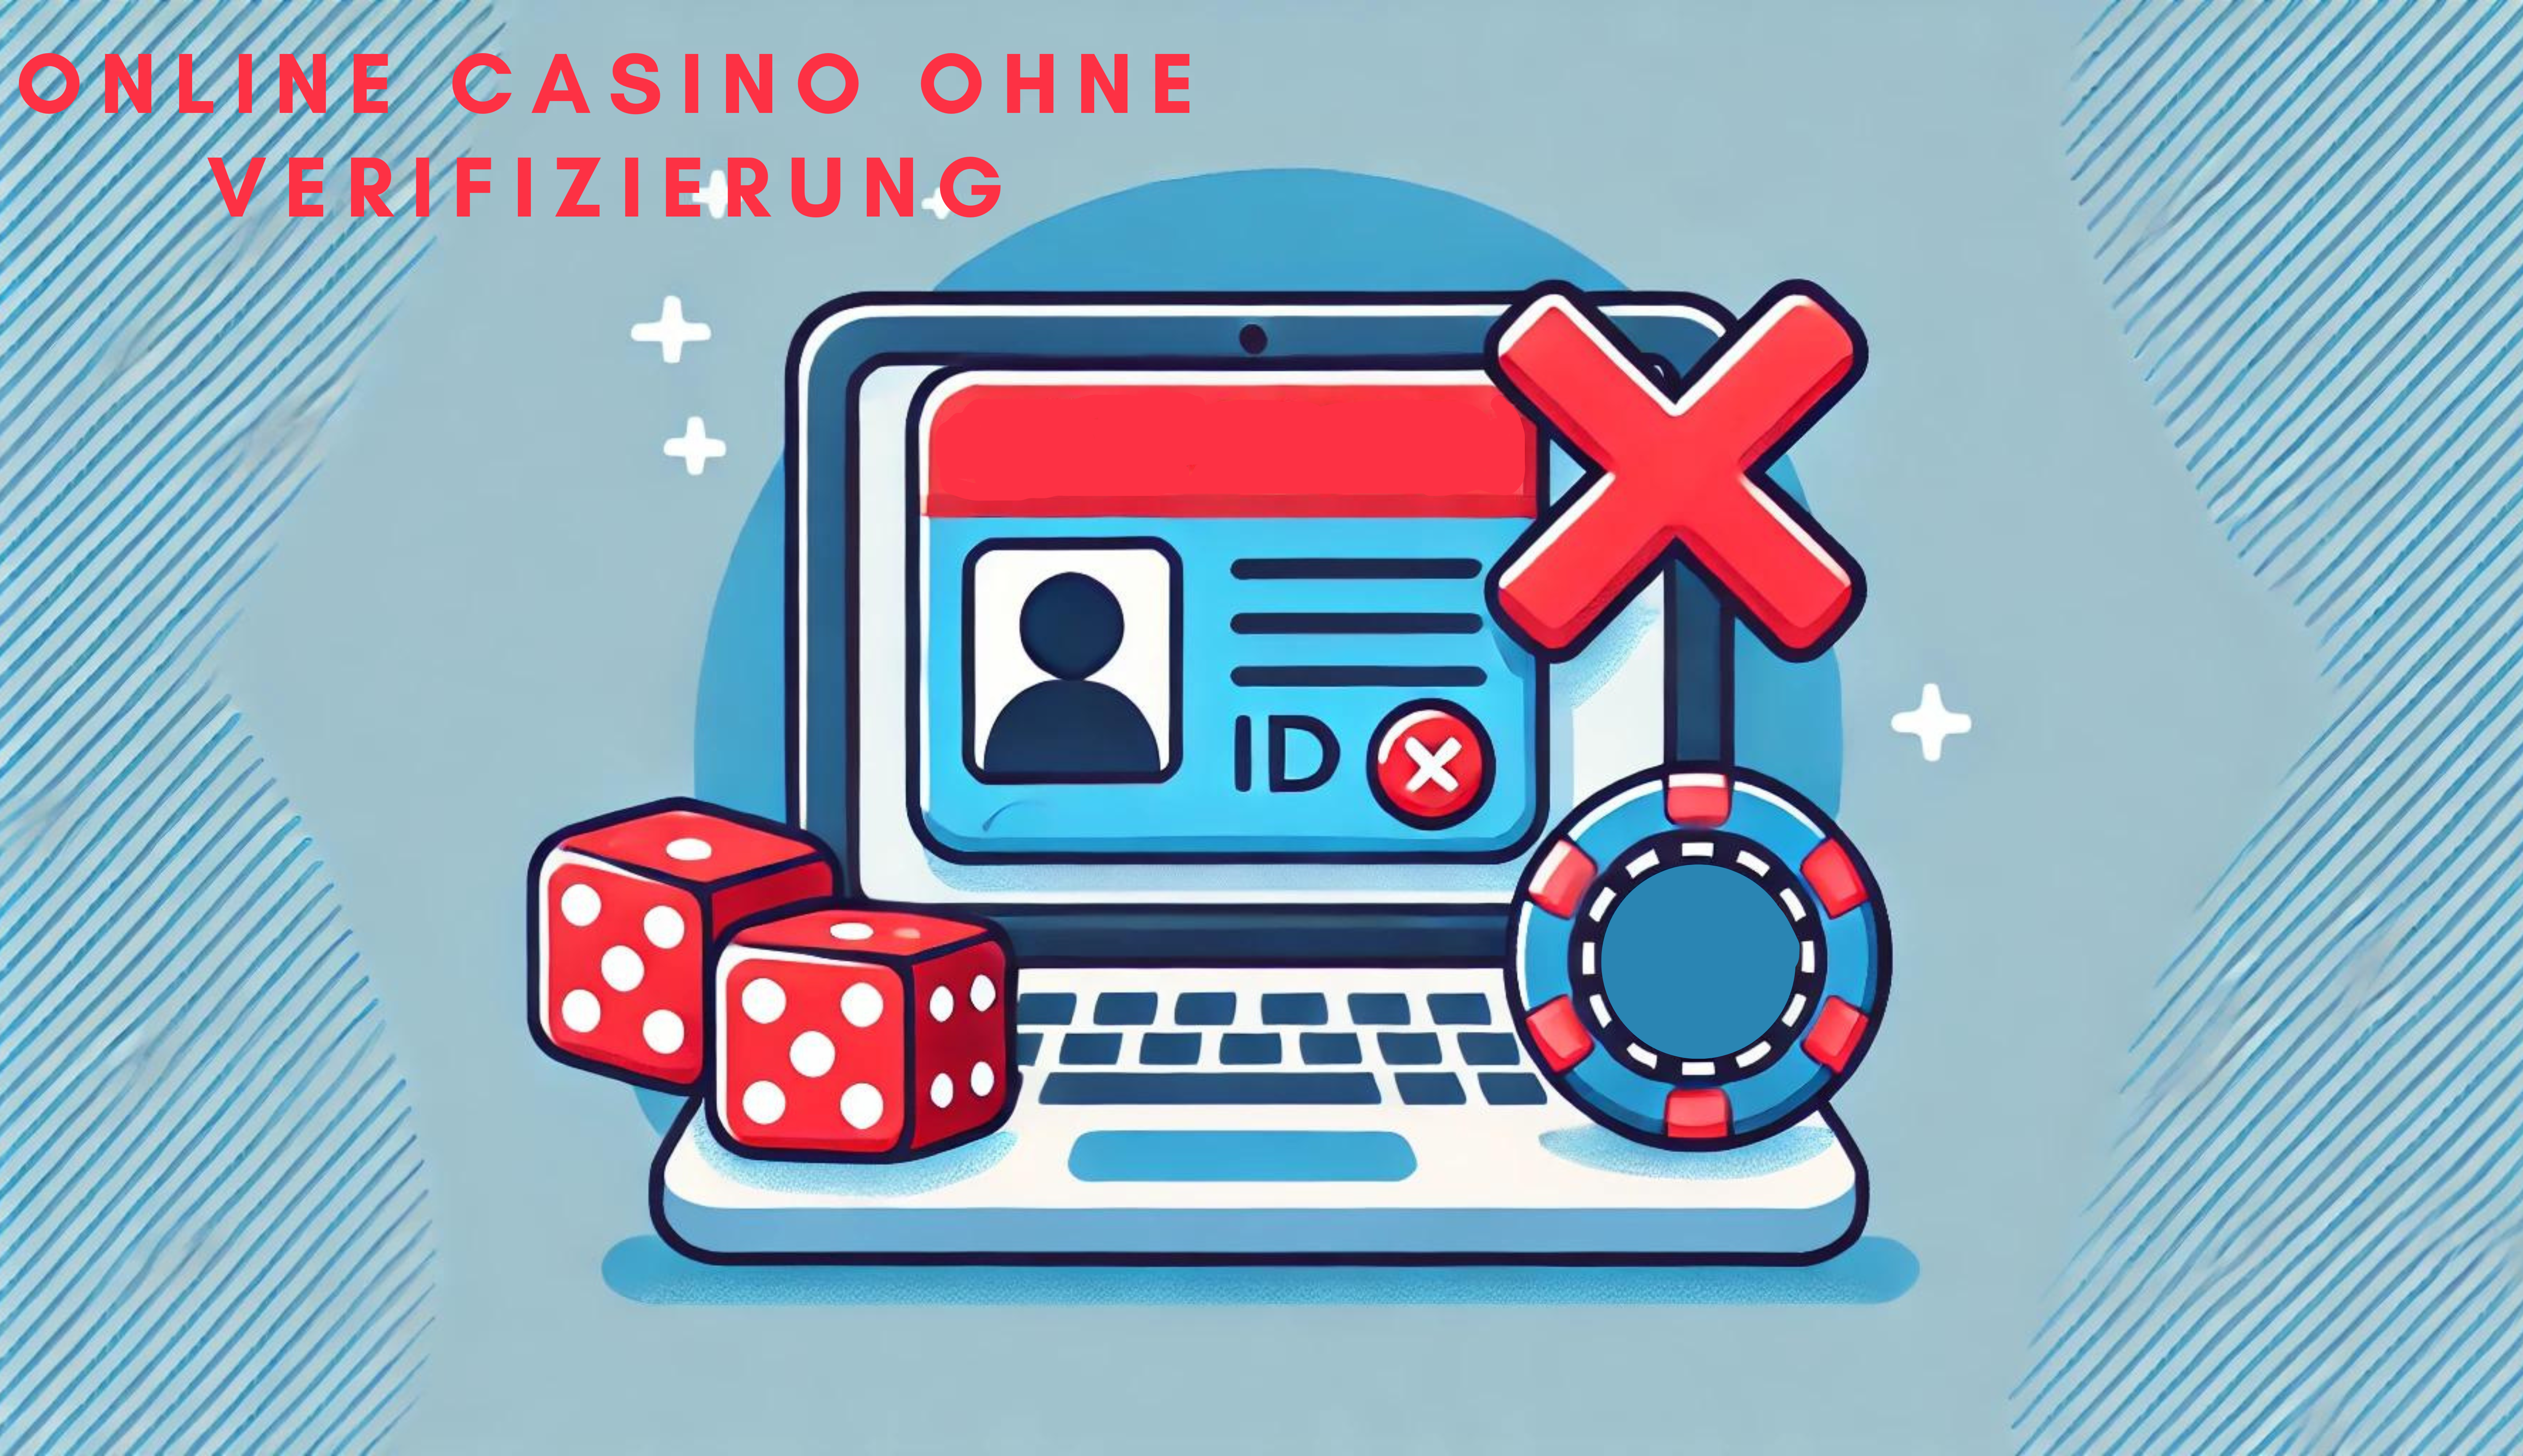 Online Casino ohne Verifizierung Österreich - Vorteile für Spieler